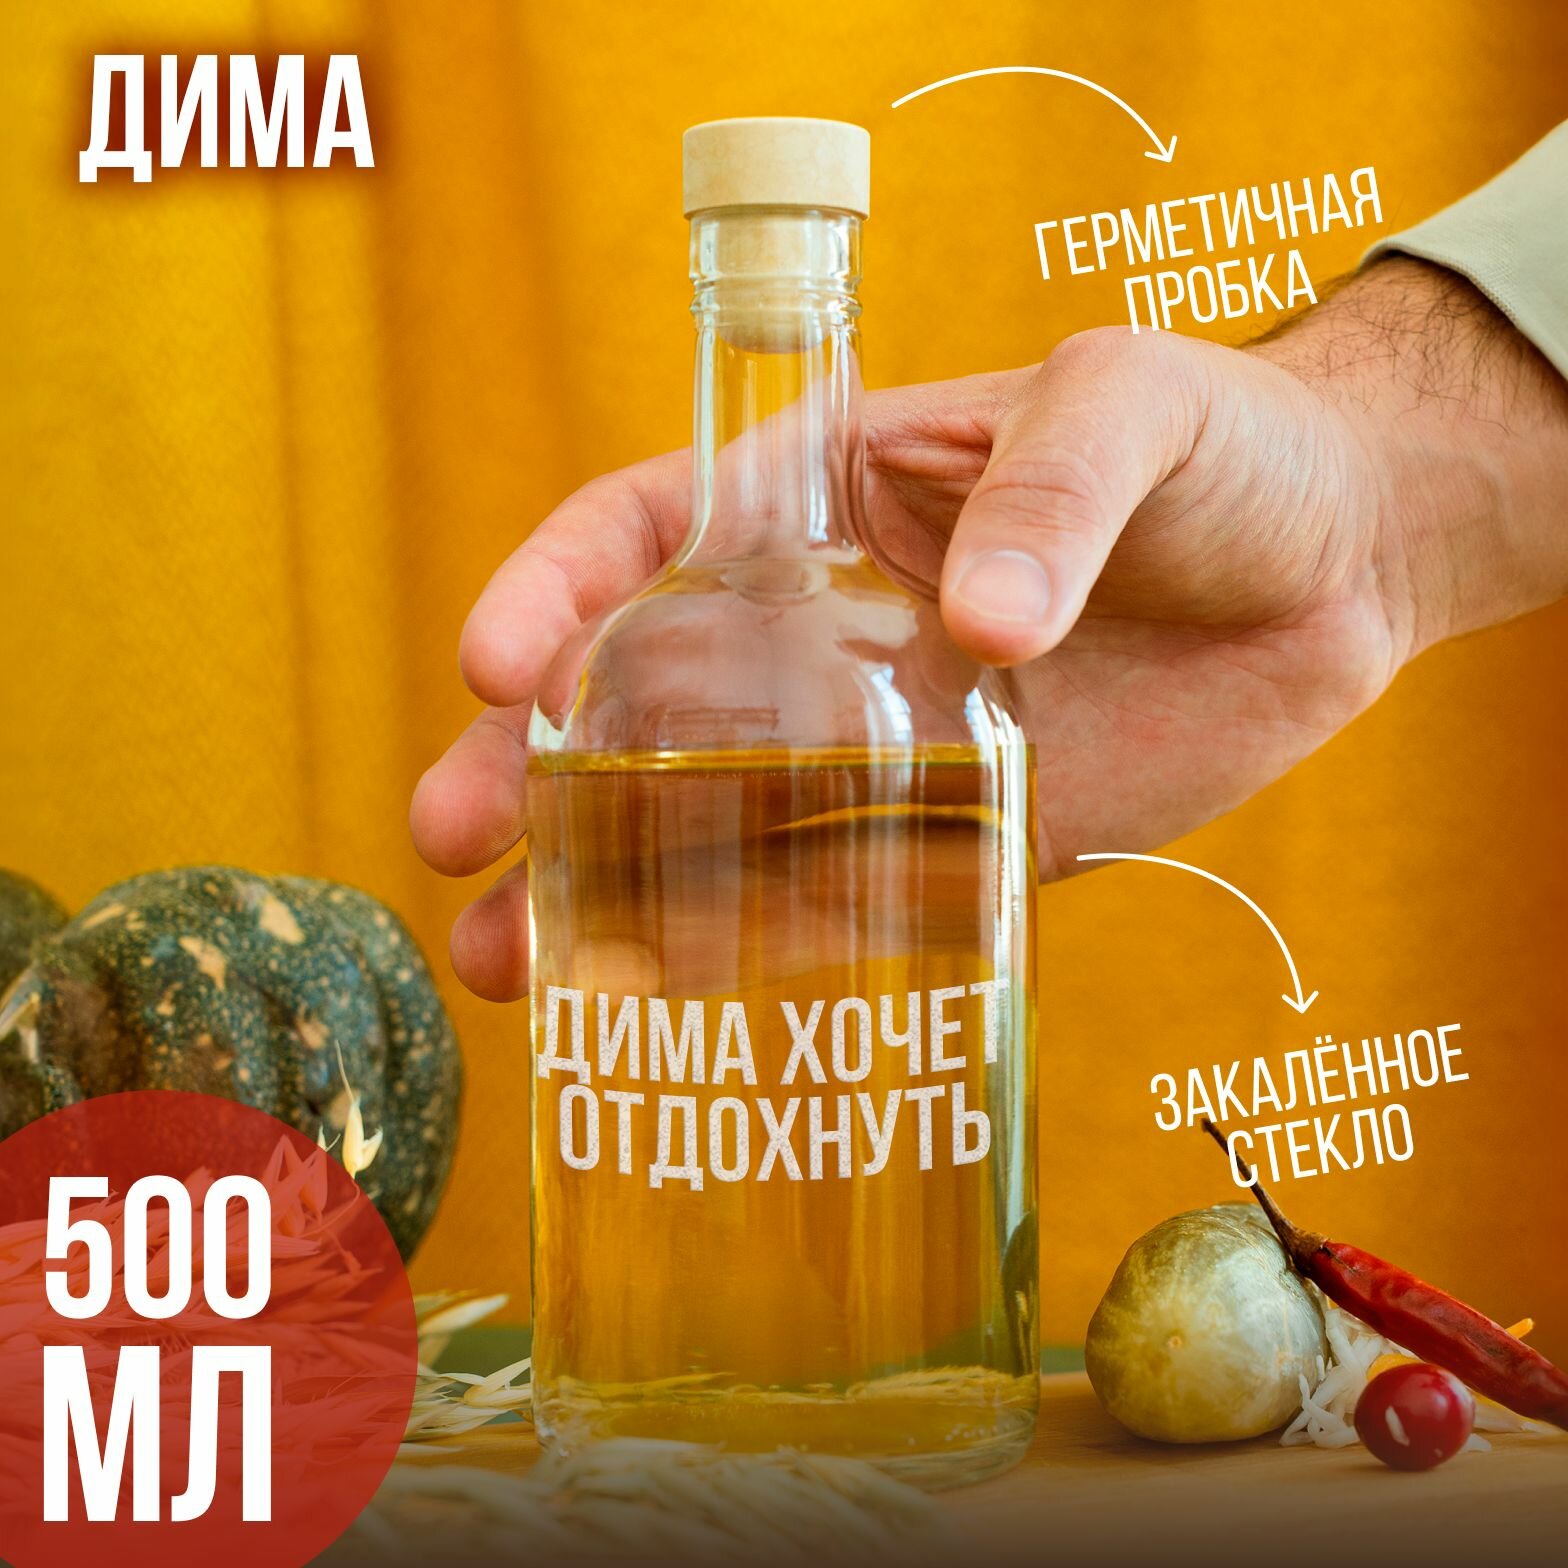 Бутылка подарочная с гравировкой "Дима хочет отдохнуть", 500 мл, 1 шт.